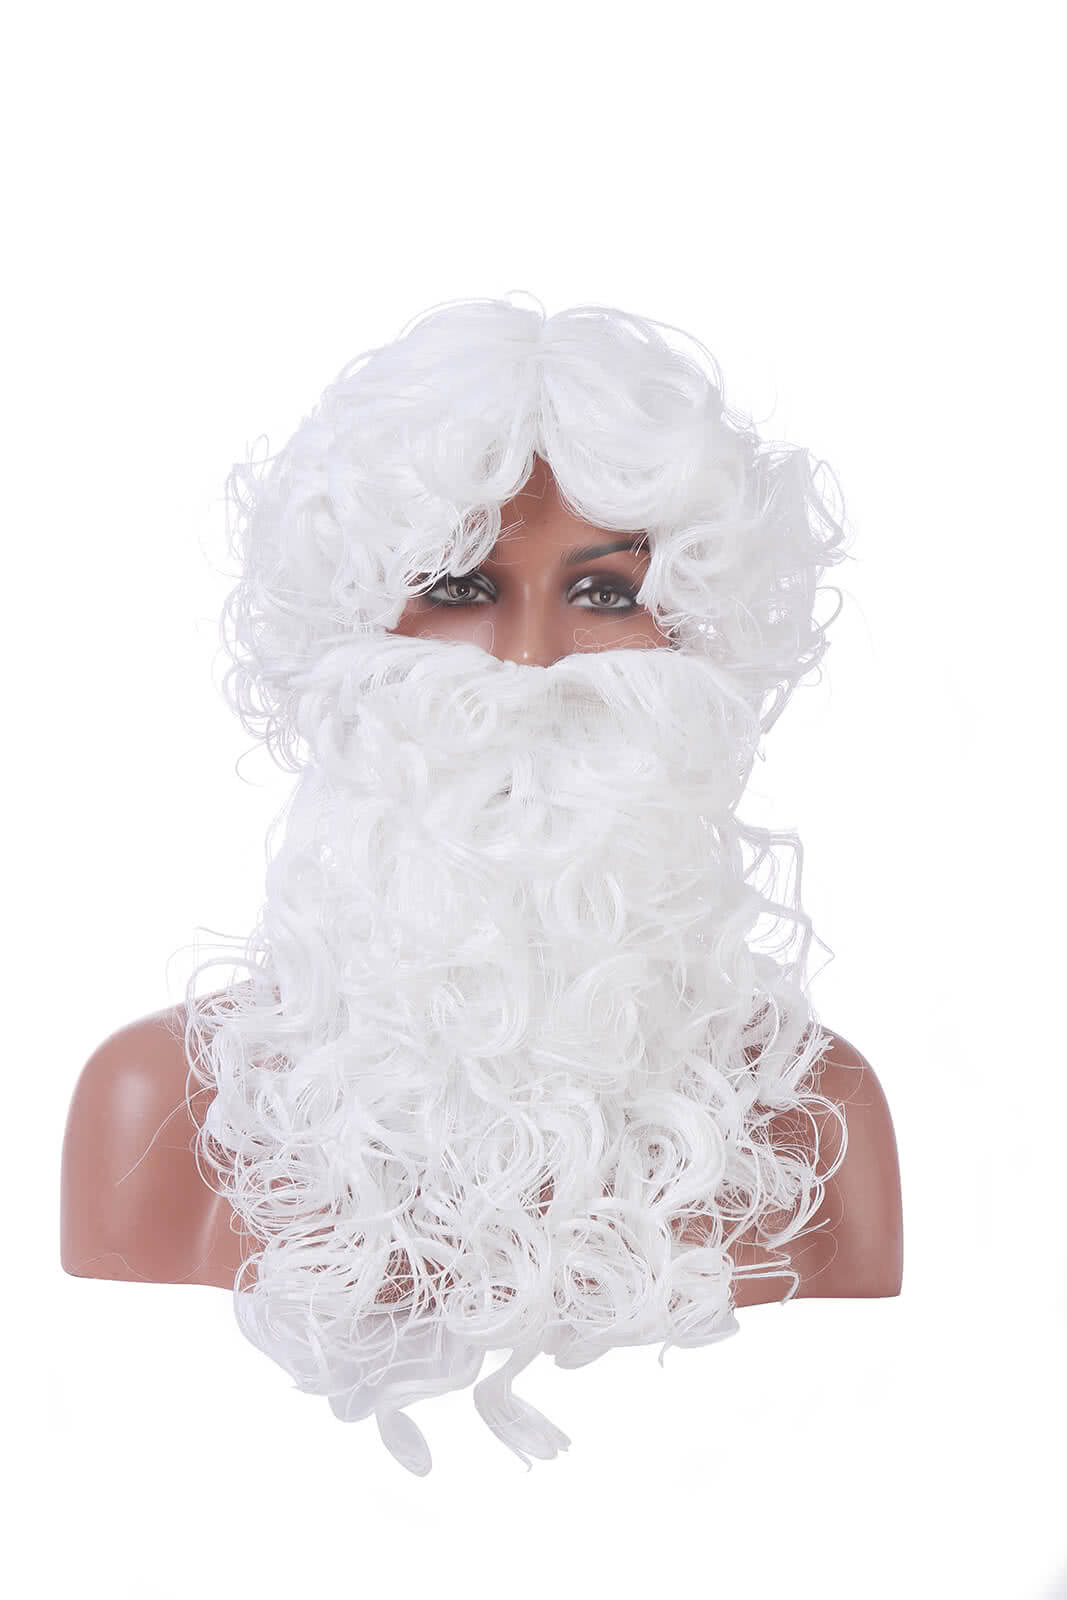 Neue Weihnachtssiedlung Santa Claus White Curly Perücken mit Bart Cosplay -Perücken